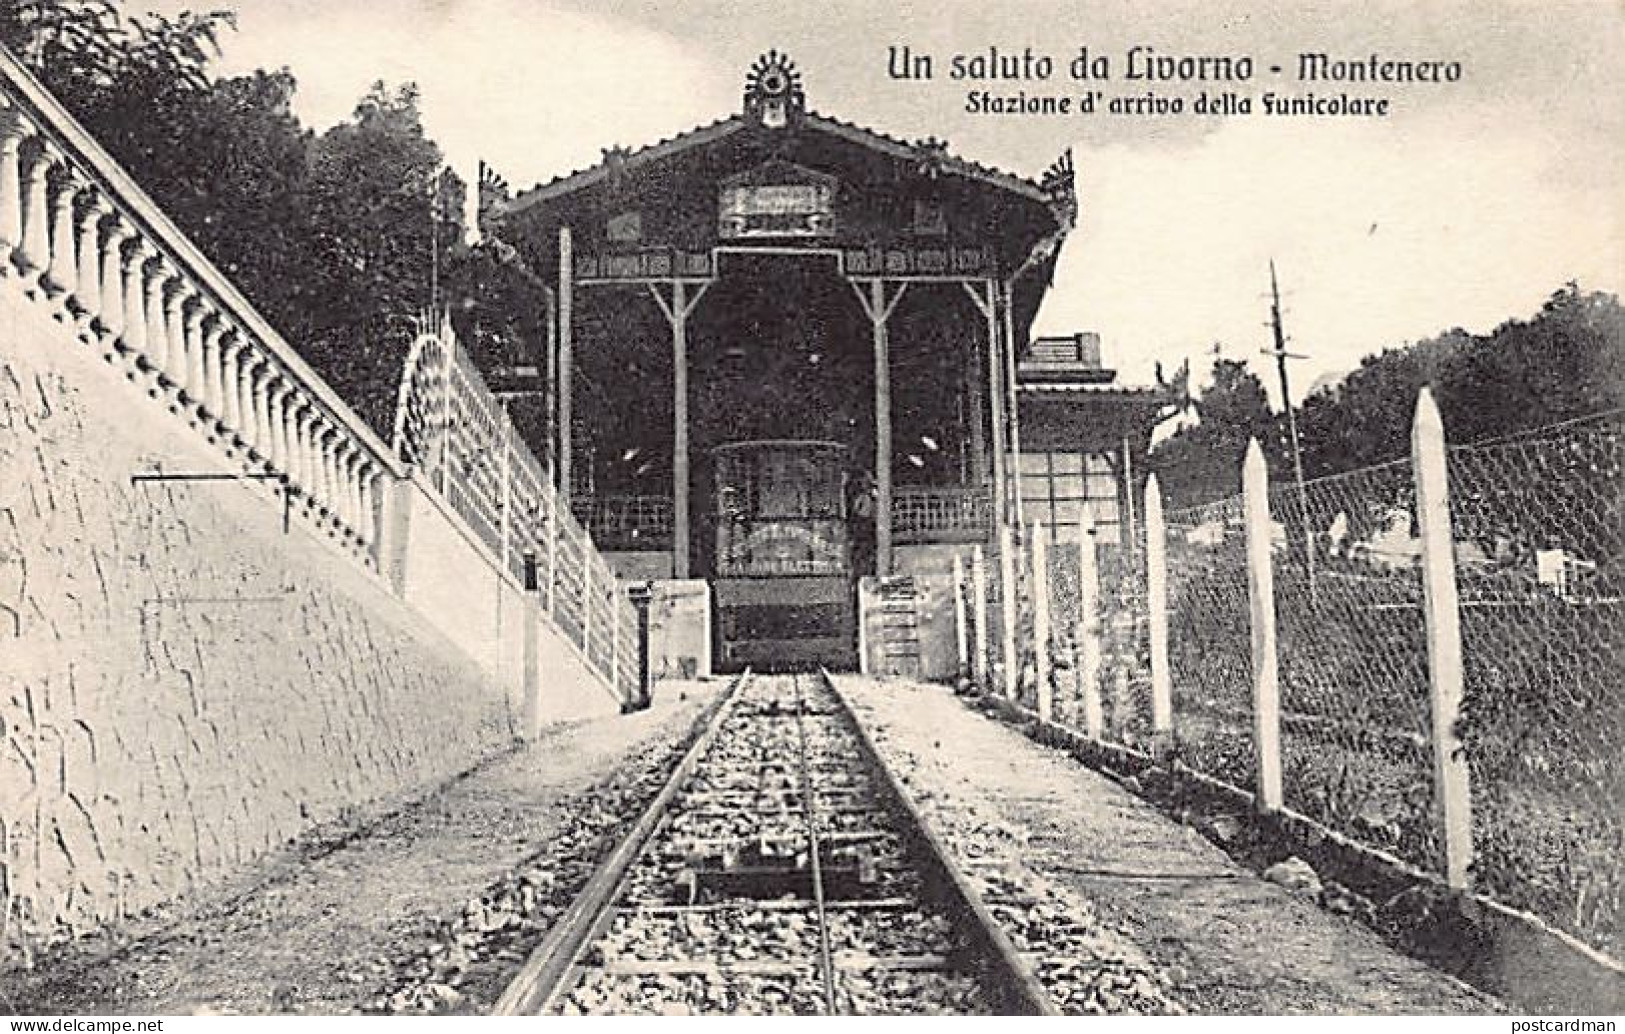 LIVORNO - Montenero - Stazione D'arriva Della Funicolare - Livorno